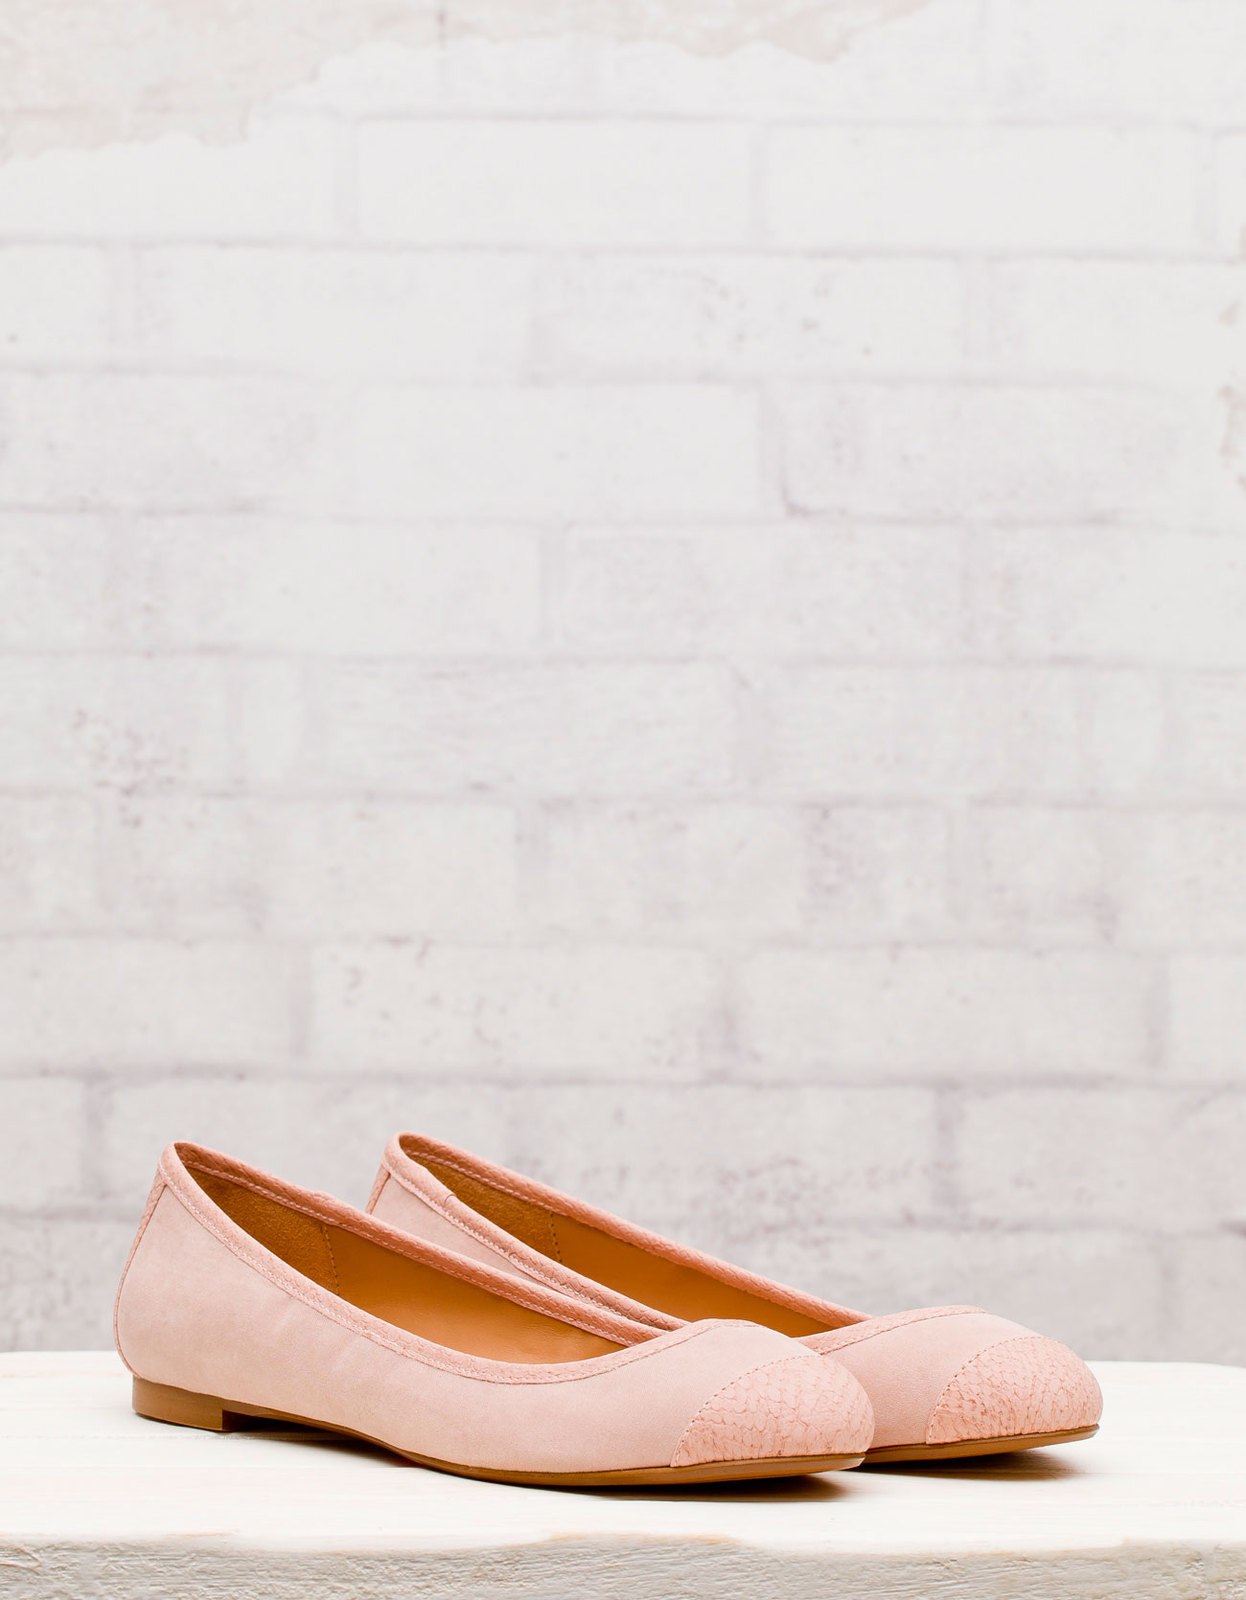 Stradivarius halvány rózsaszín balerina cipő 2012.2.28 fotója